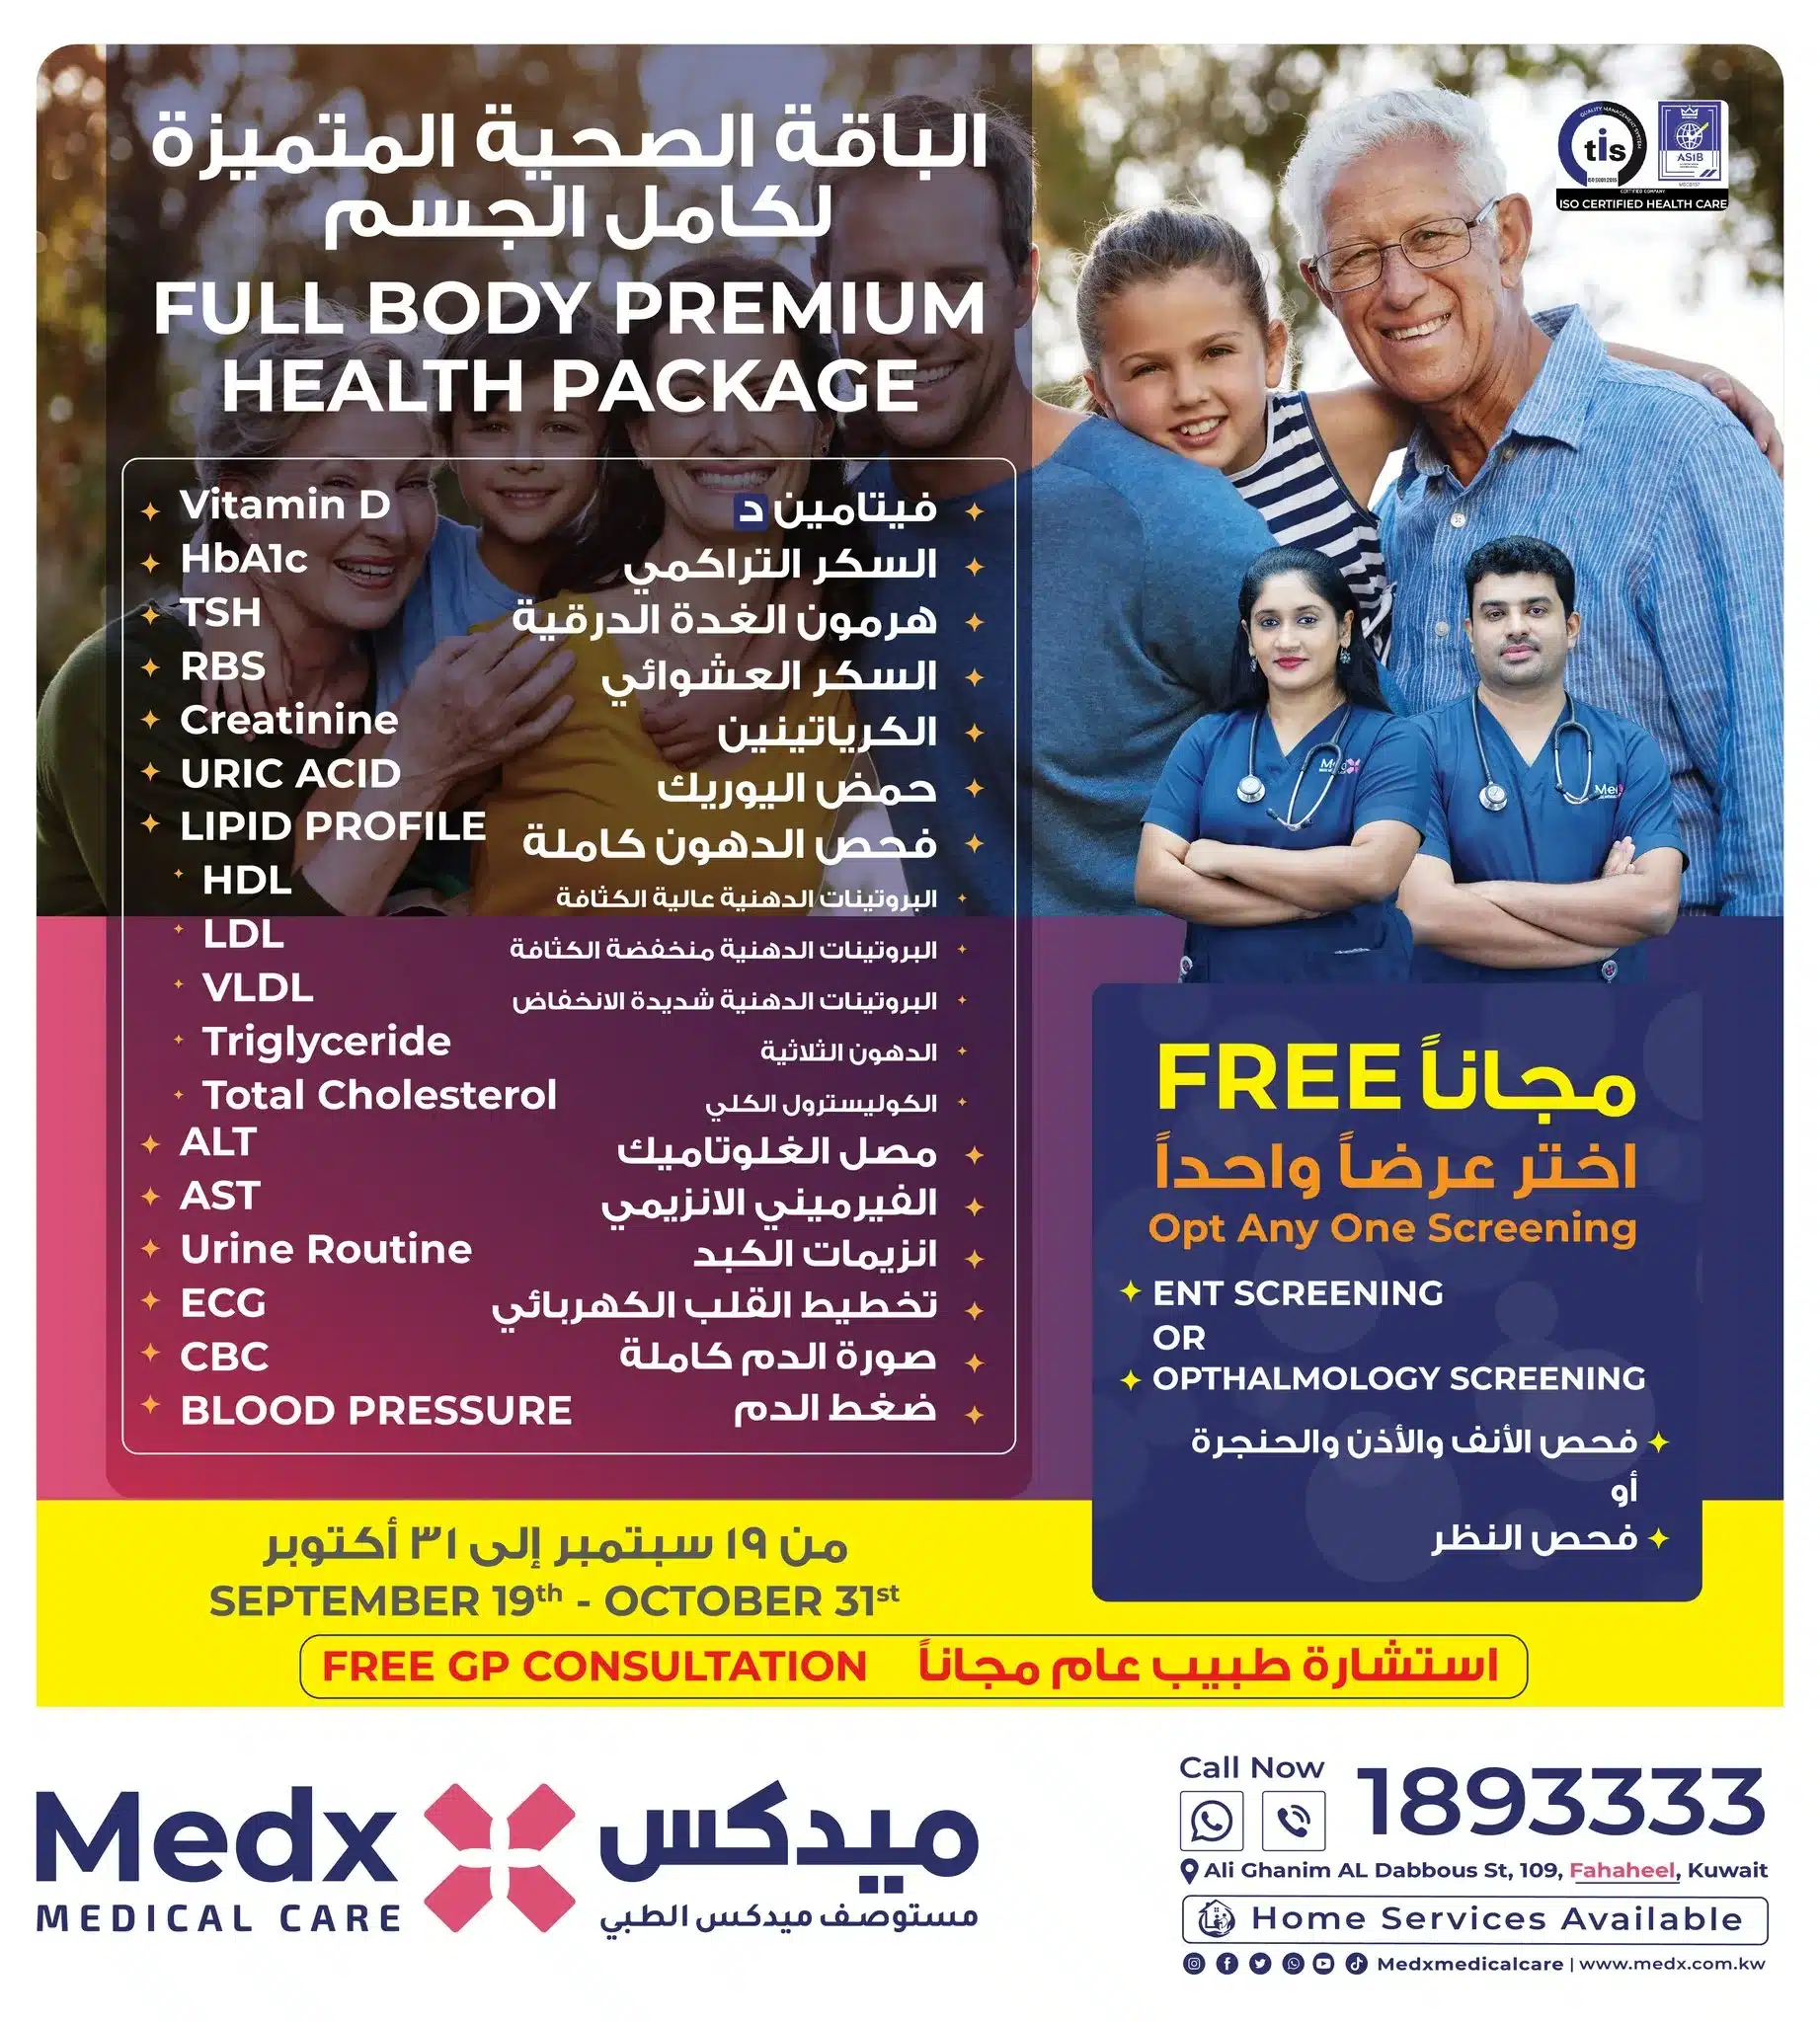 Full Body Health Package, Medx Medical Care, مستوصف ميدكس الطبي